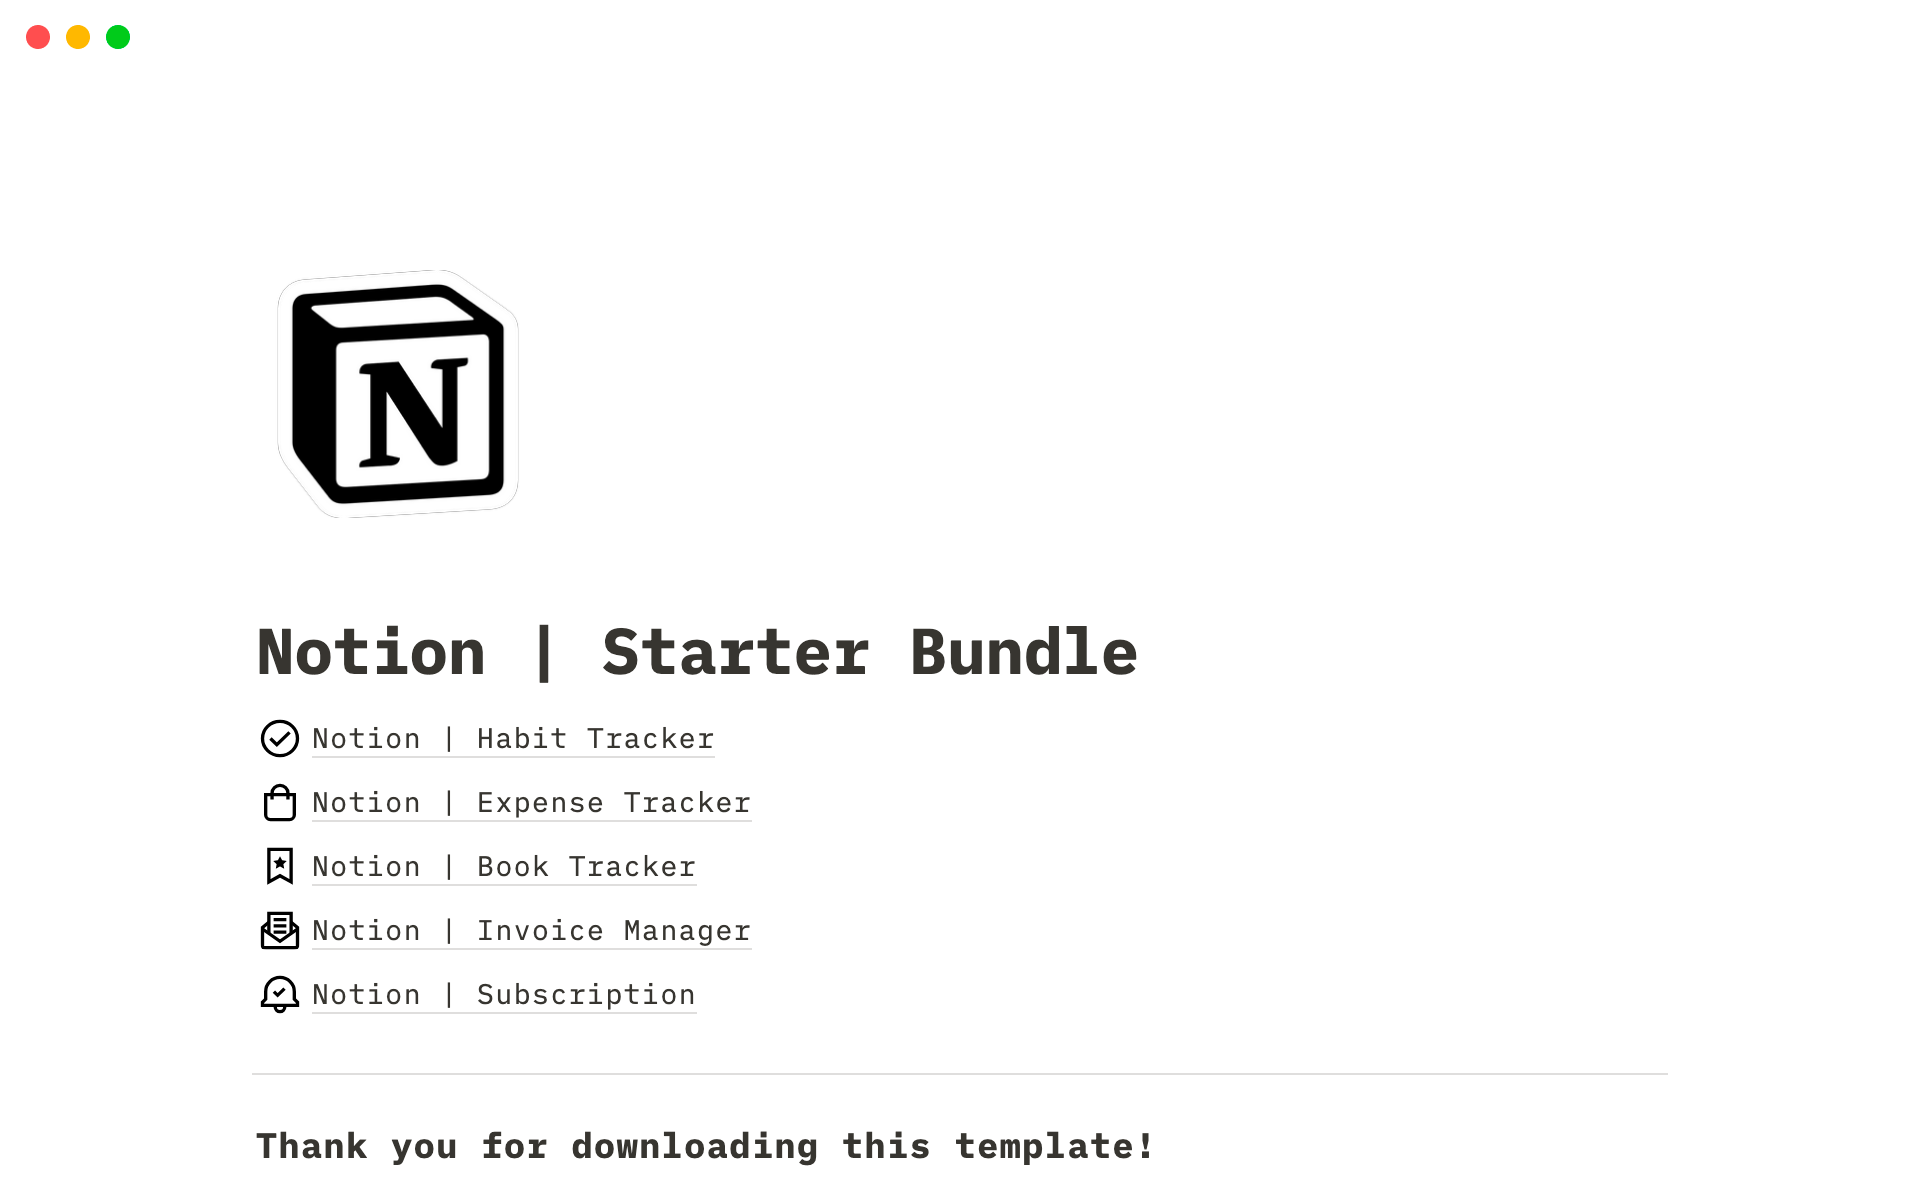 Notion | Starter Bundleのテンプレートのプレビュー